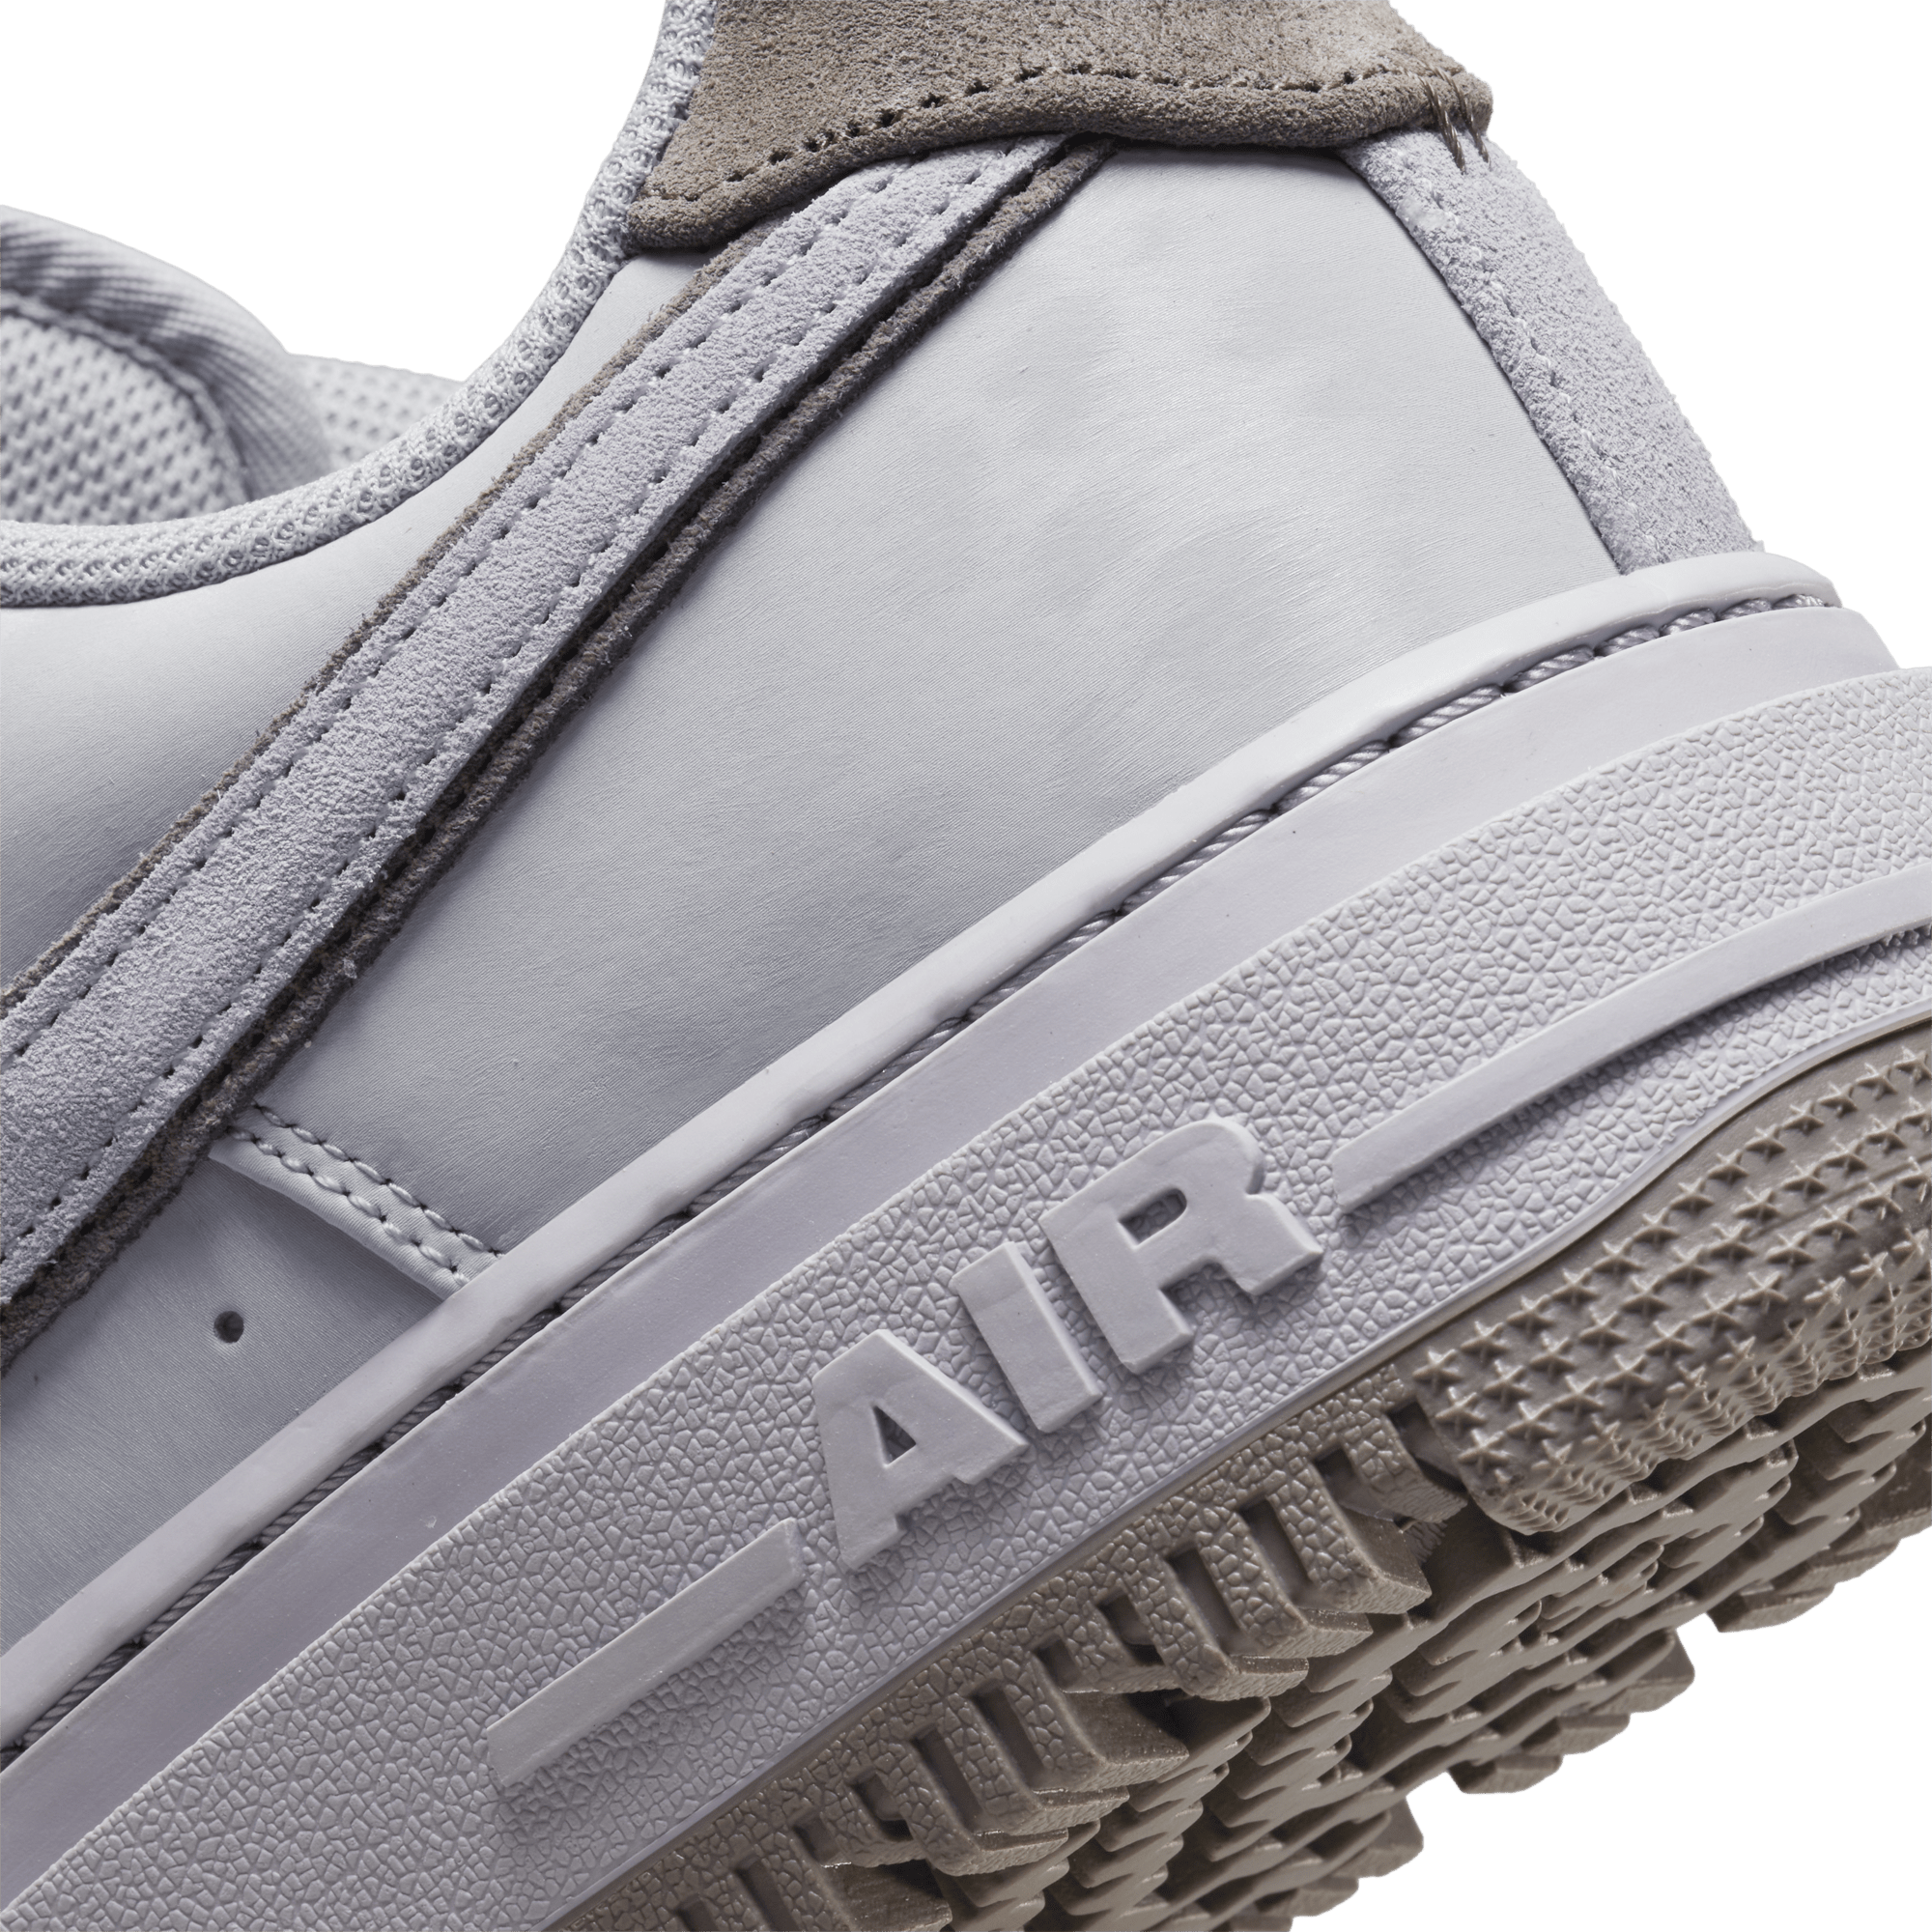 Nike FOOTWEAR Nike Air Force 1 Luxe -  Men's